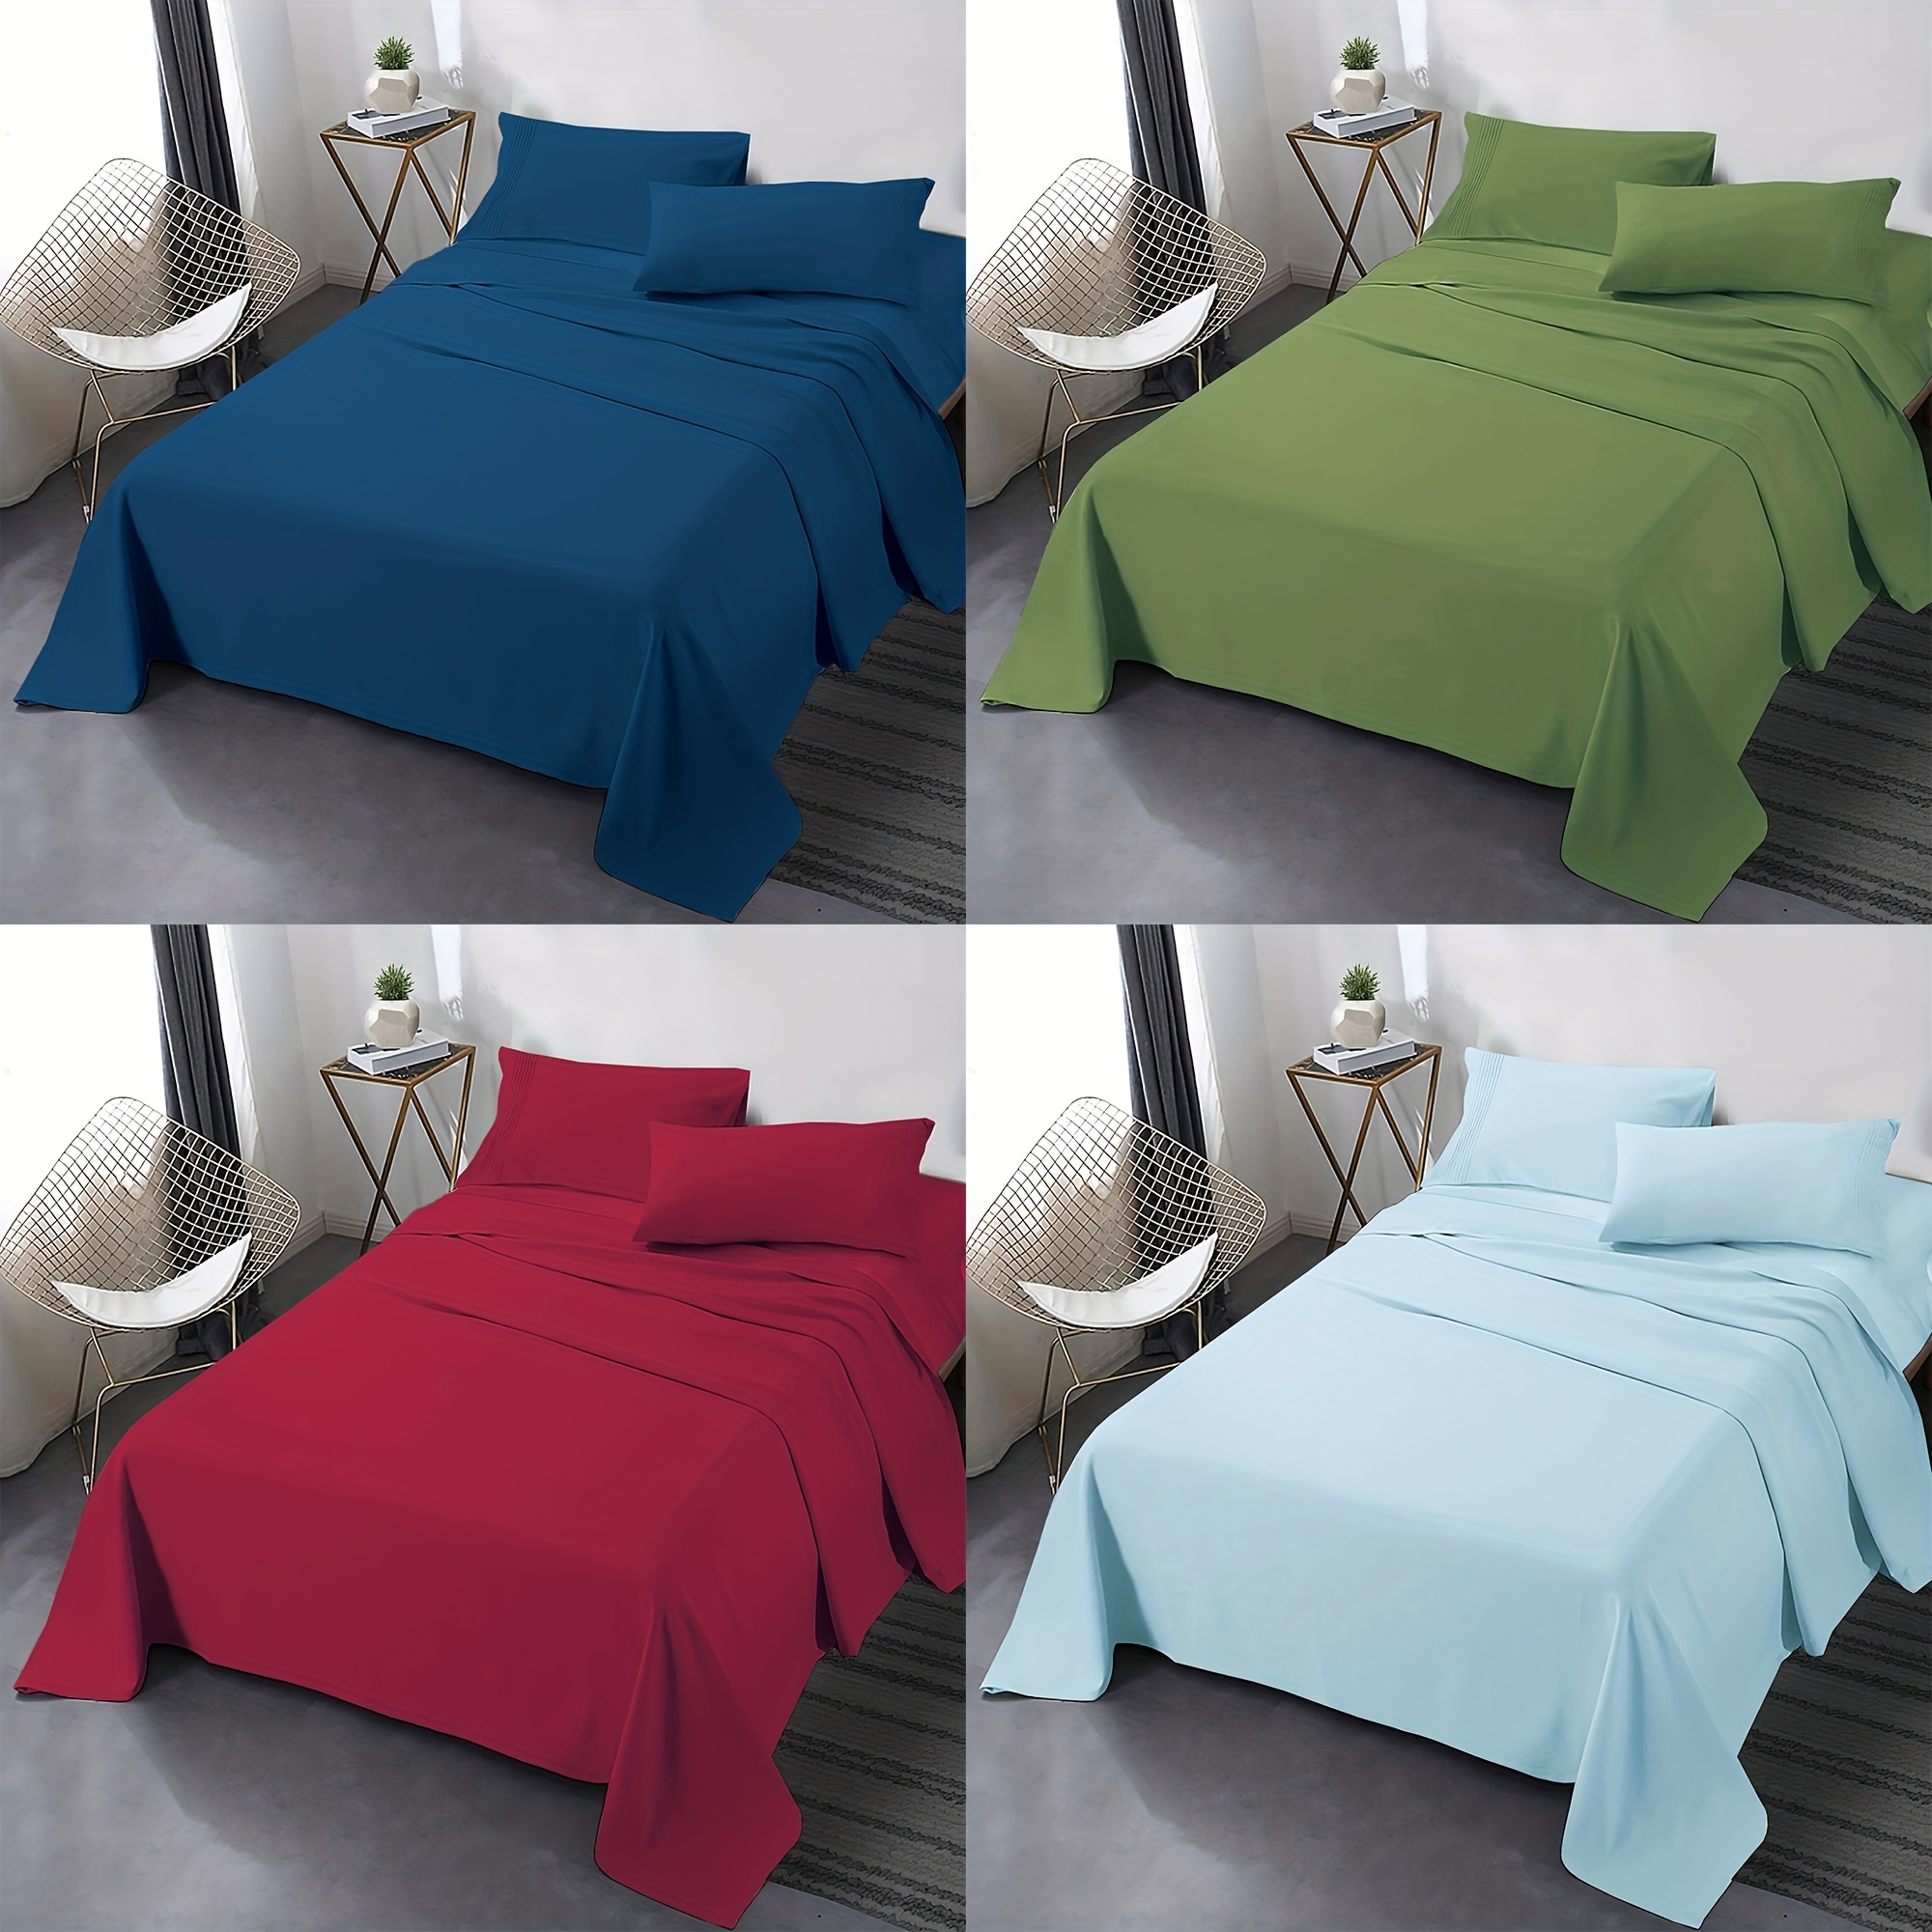 Utopia Bedding Bed Sheet Set - Brushed Microfiber 4 Piece Queen Bedding